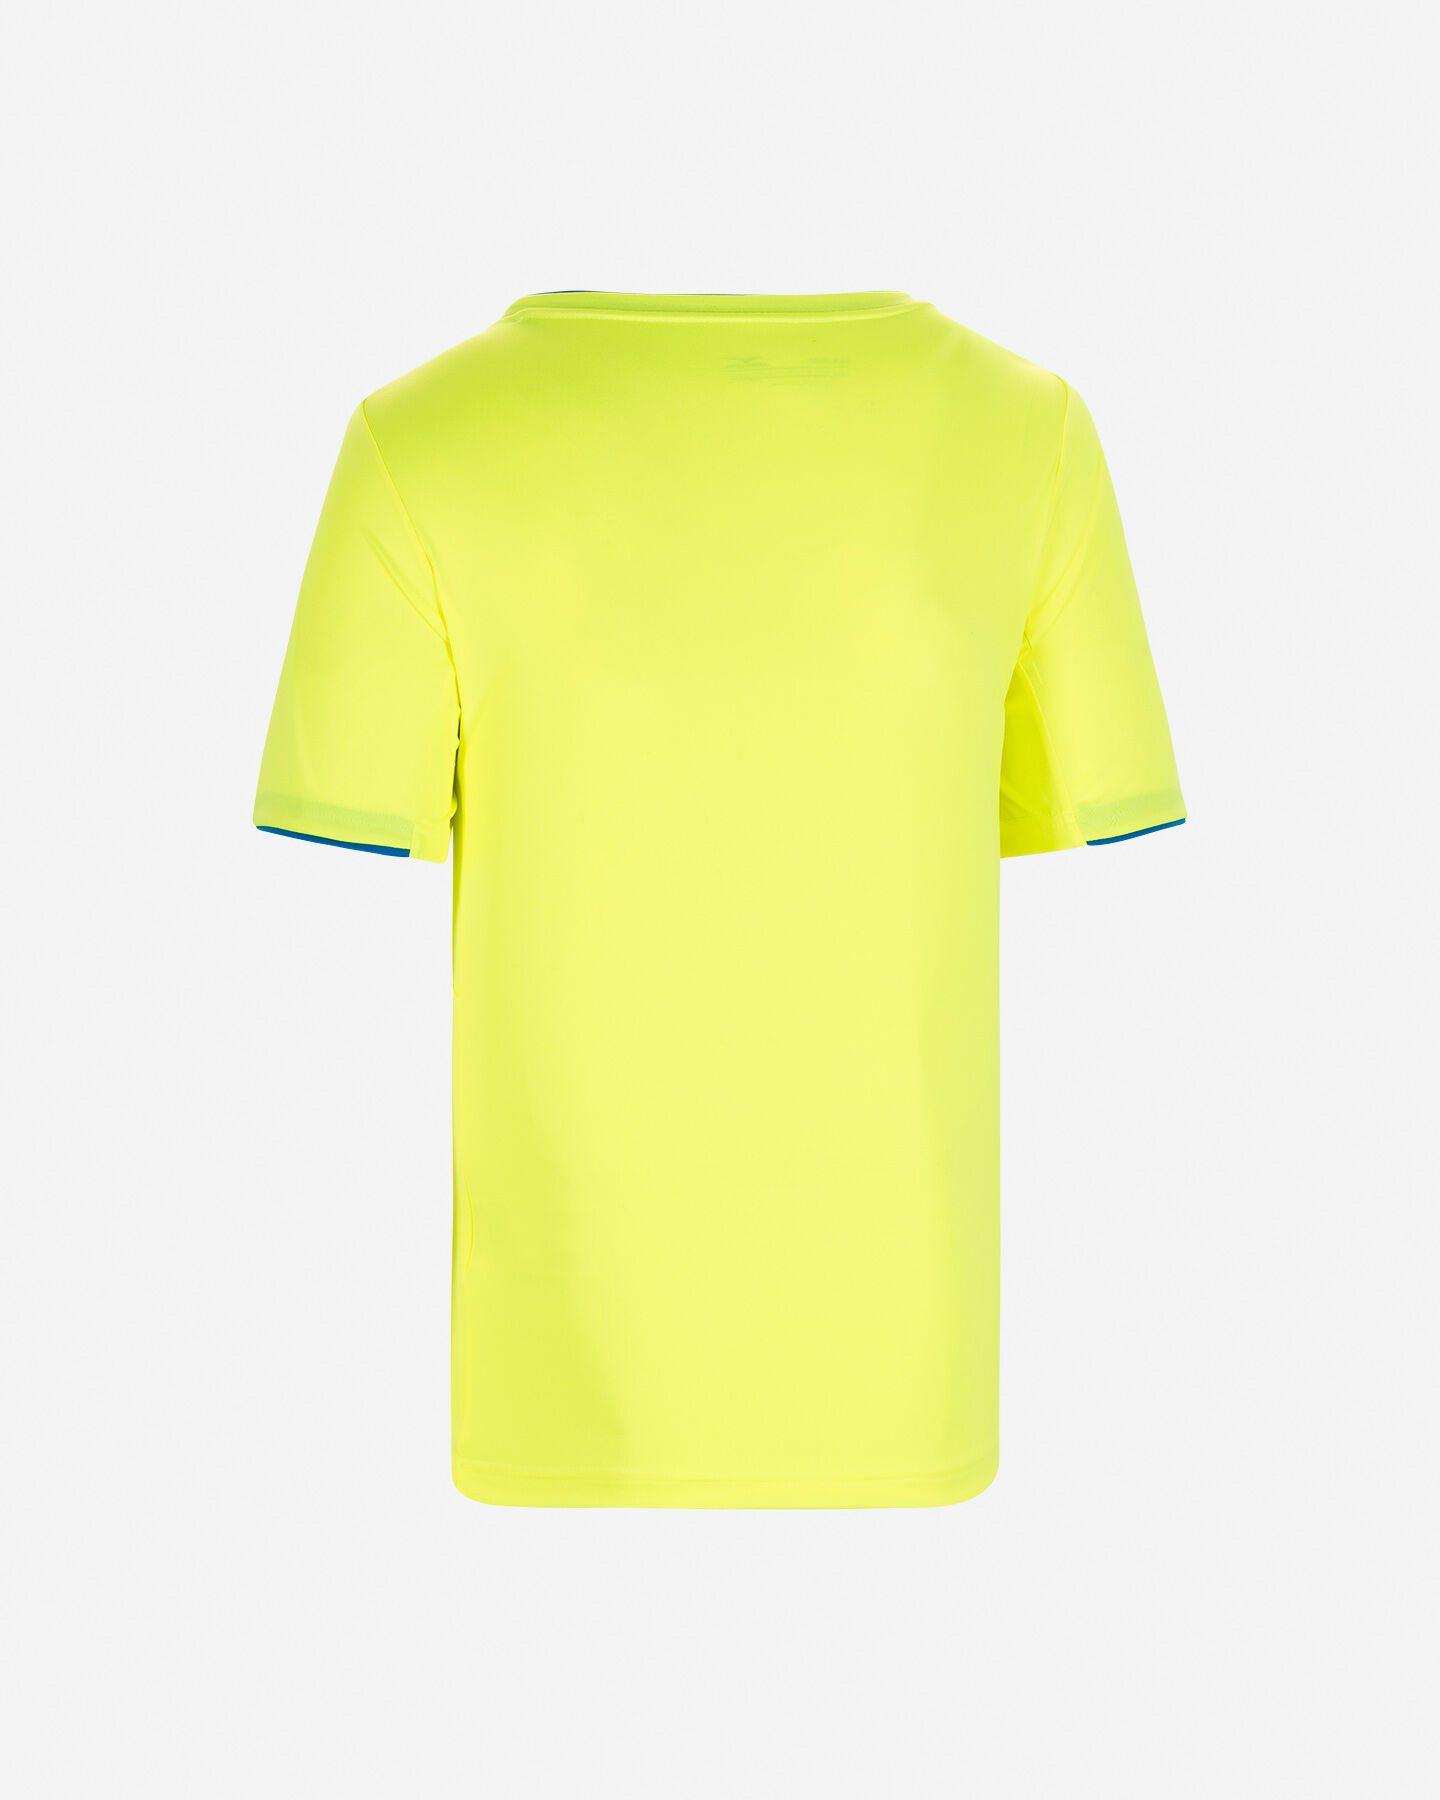  T-Shirt tennis MIZUNO TENNIS CORE M S5363439|44|S scatto 1